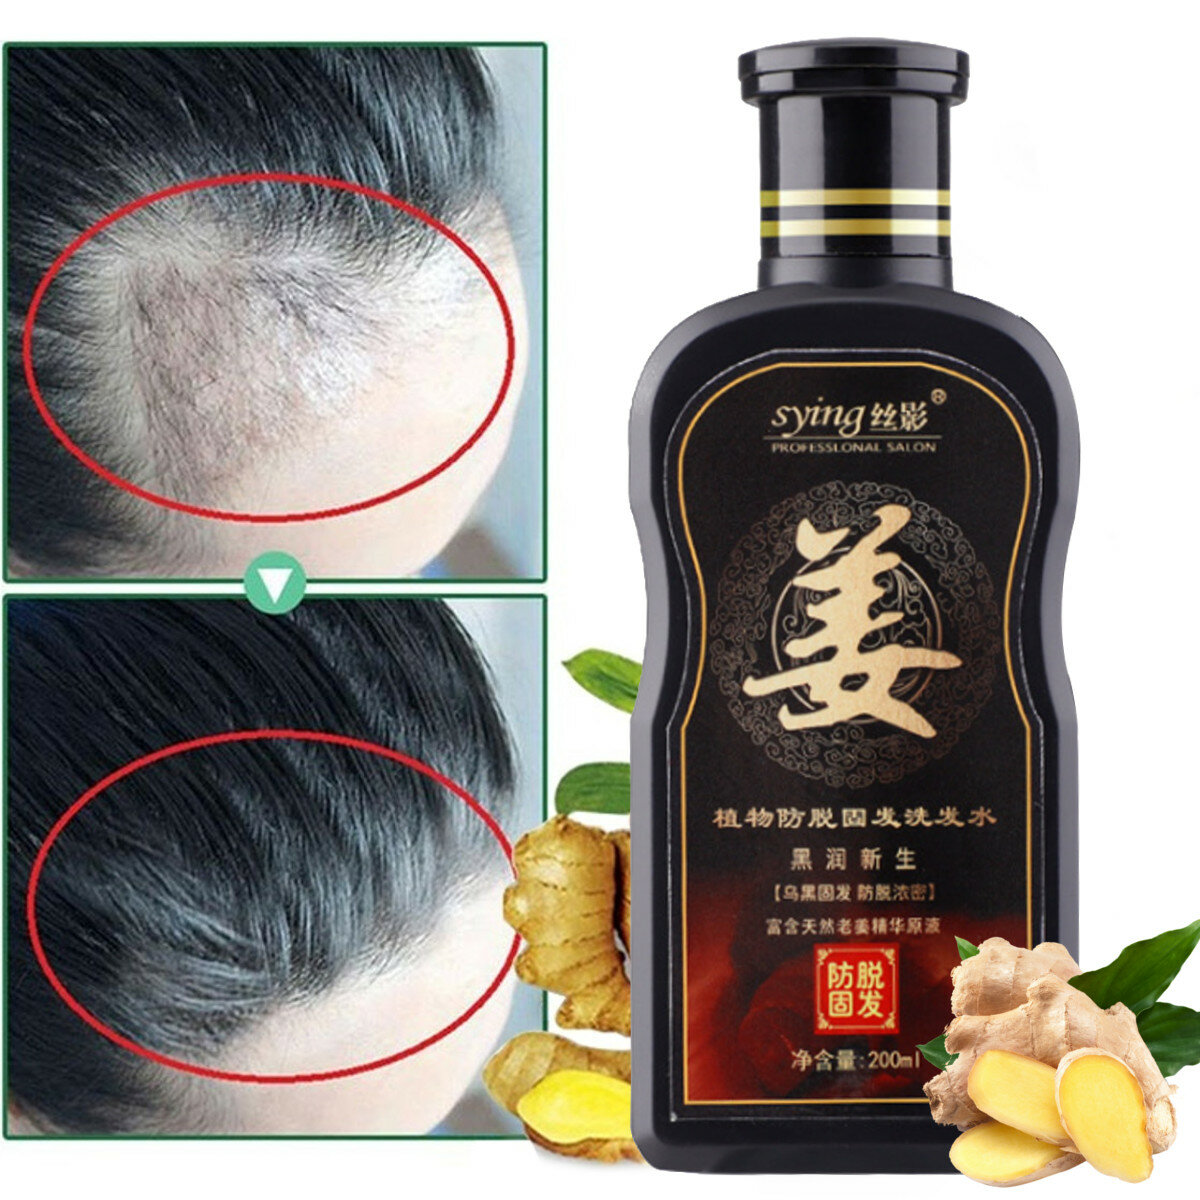 

200ml Natural Ginger Shampoo Oil-Control Anti Dandruff Anti Hair Loss Hair Care